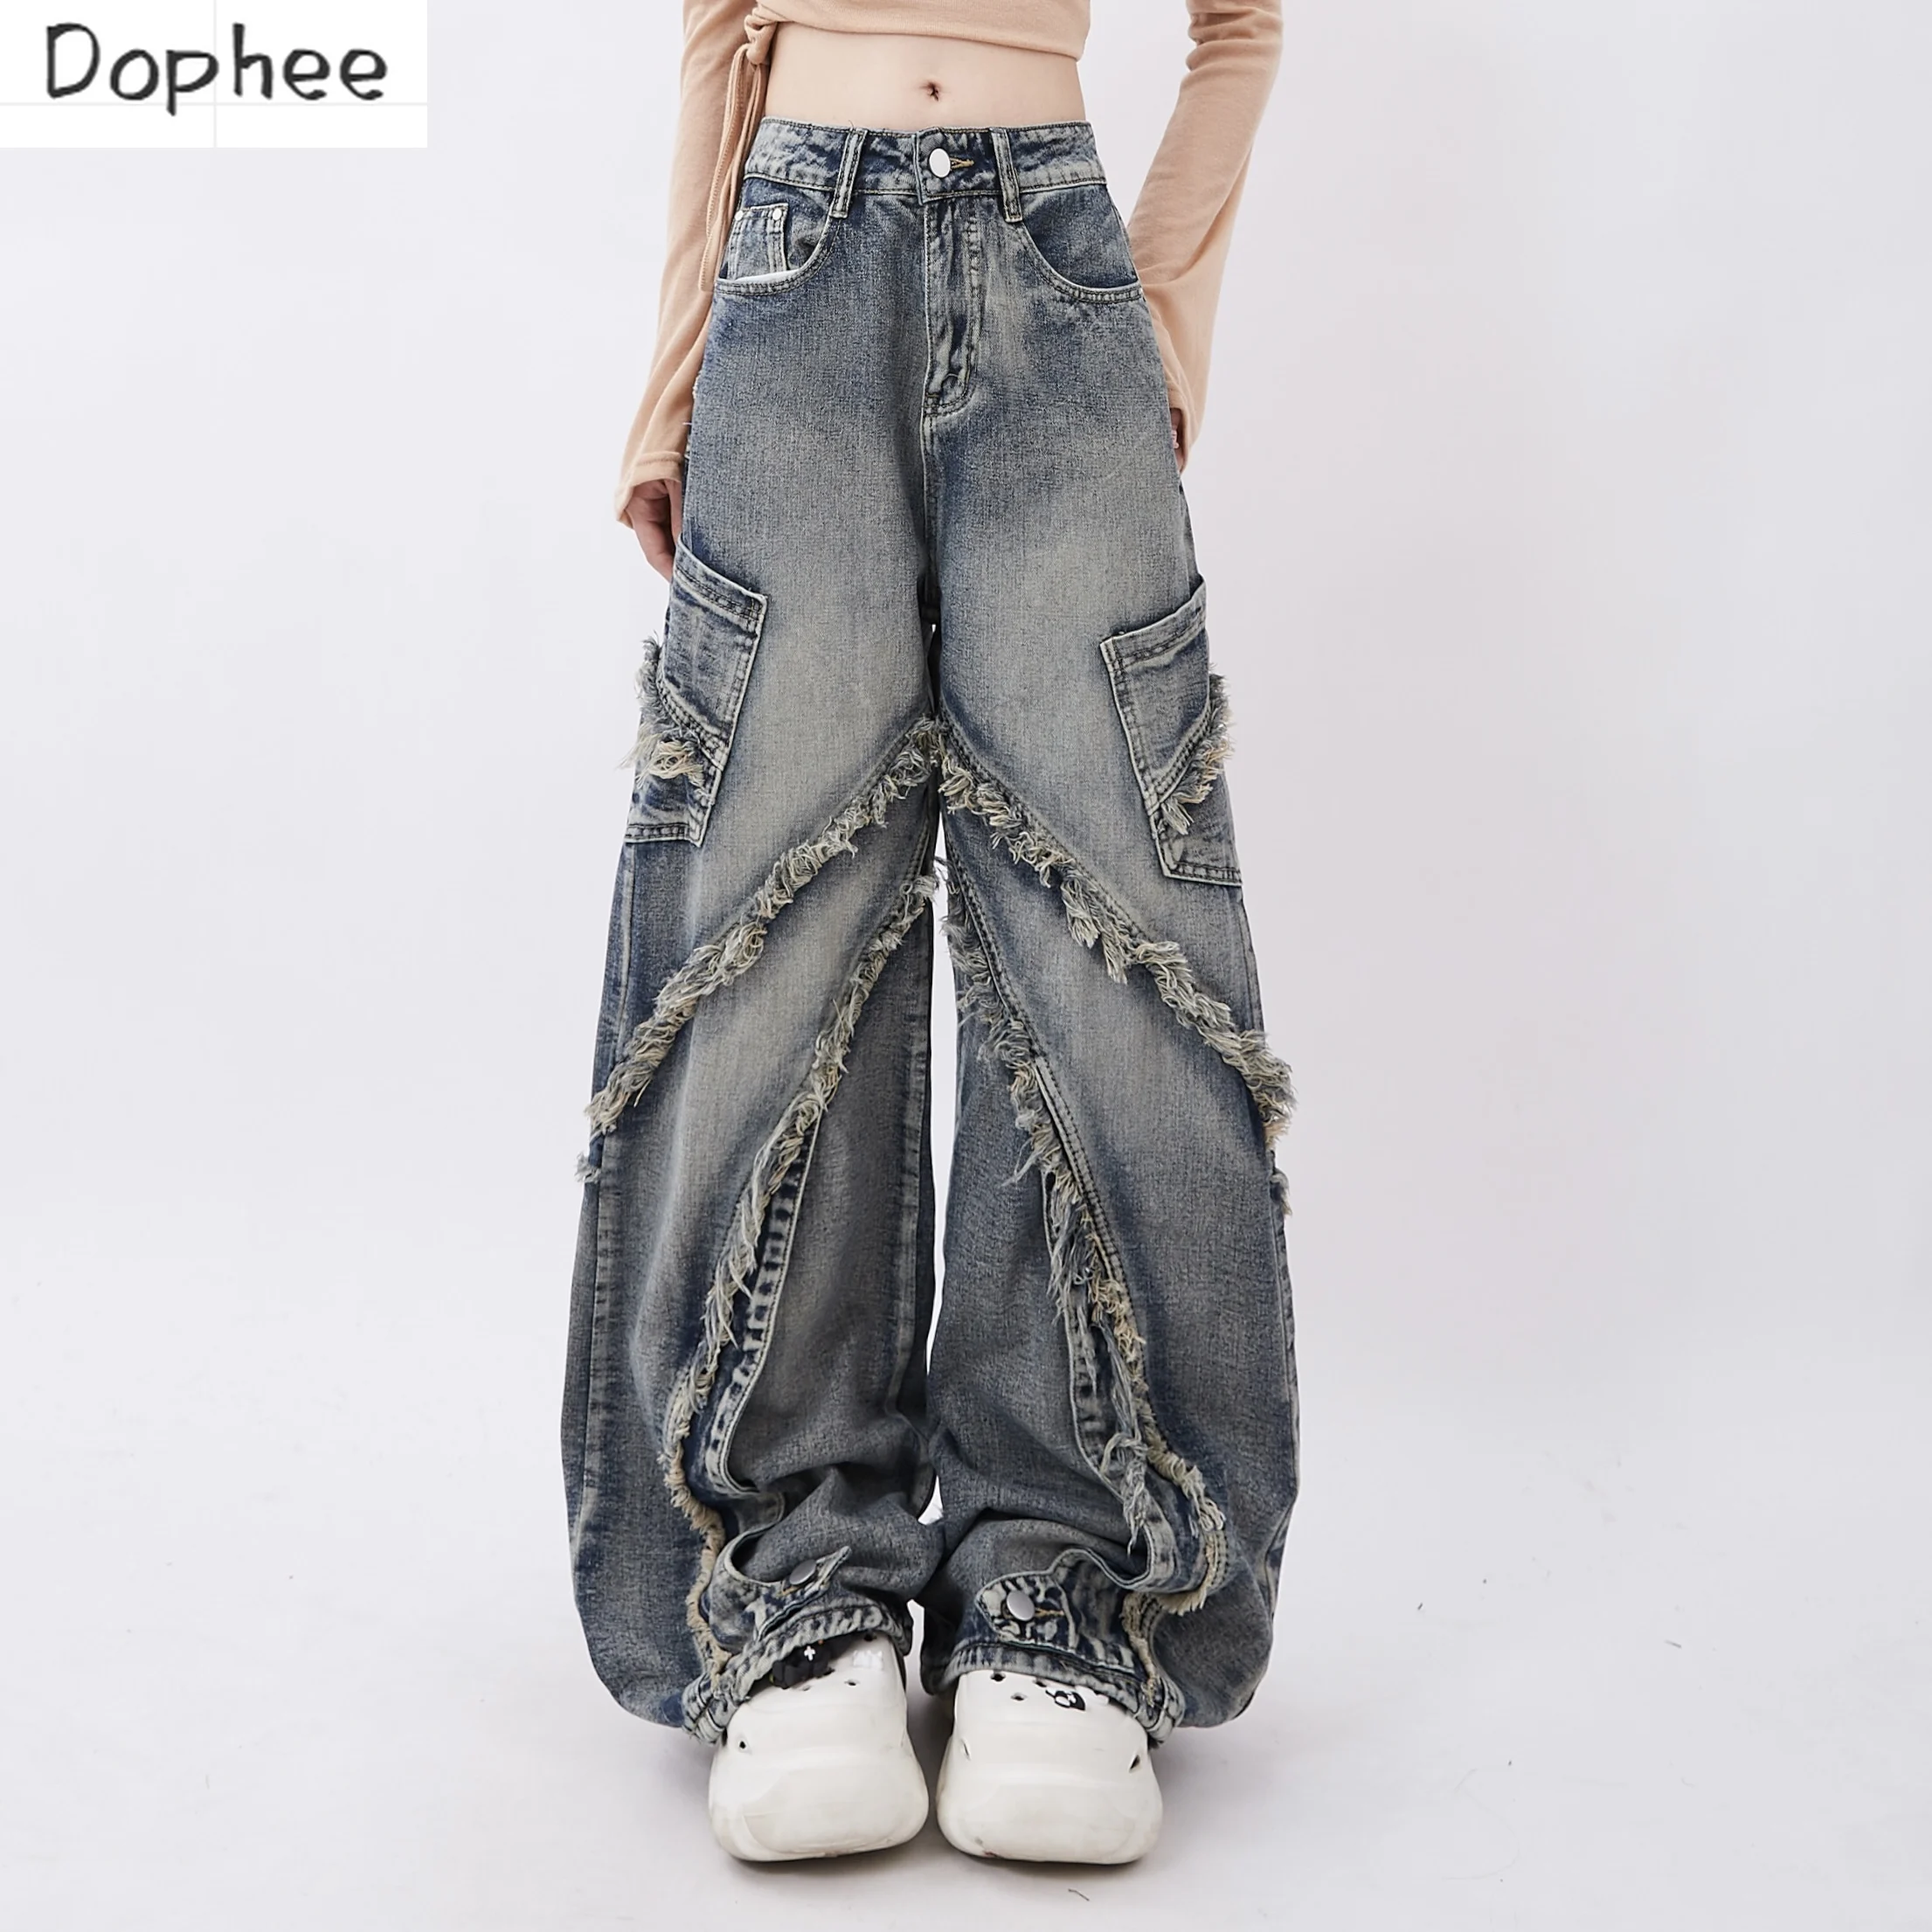 dophee-jeans-jeans-vintage-feminino-com-franja-calca-reta-que-combina-com-tudo-streetwear-spice-girls-calcas-soltas-novo-outono